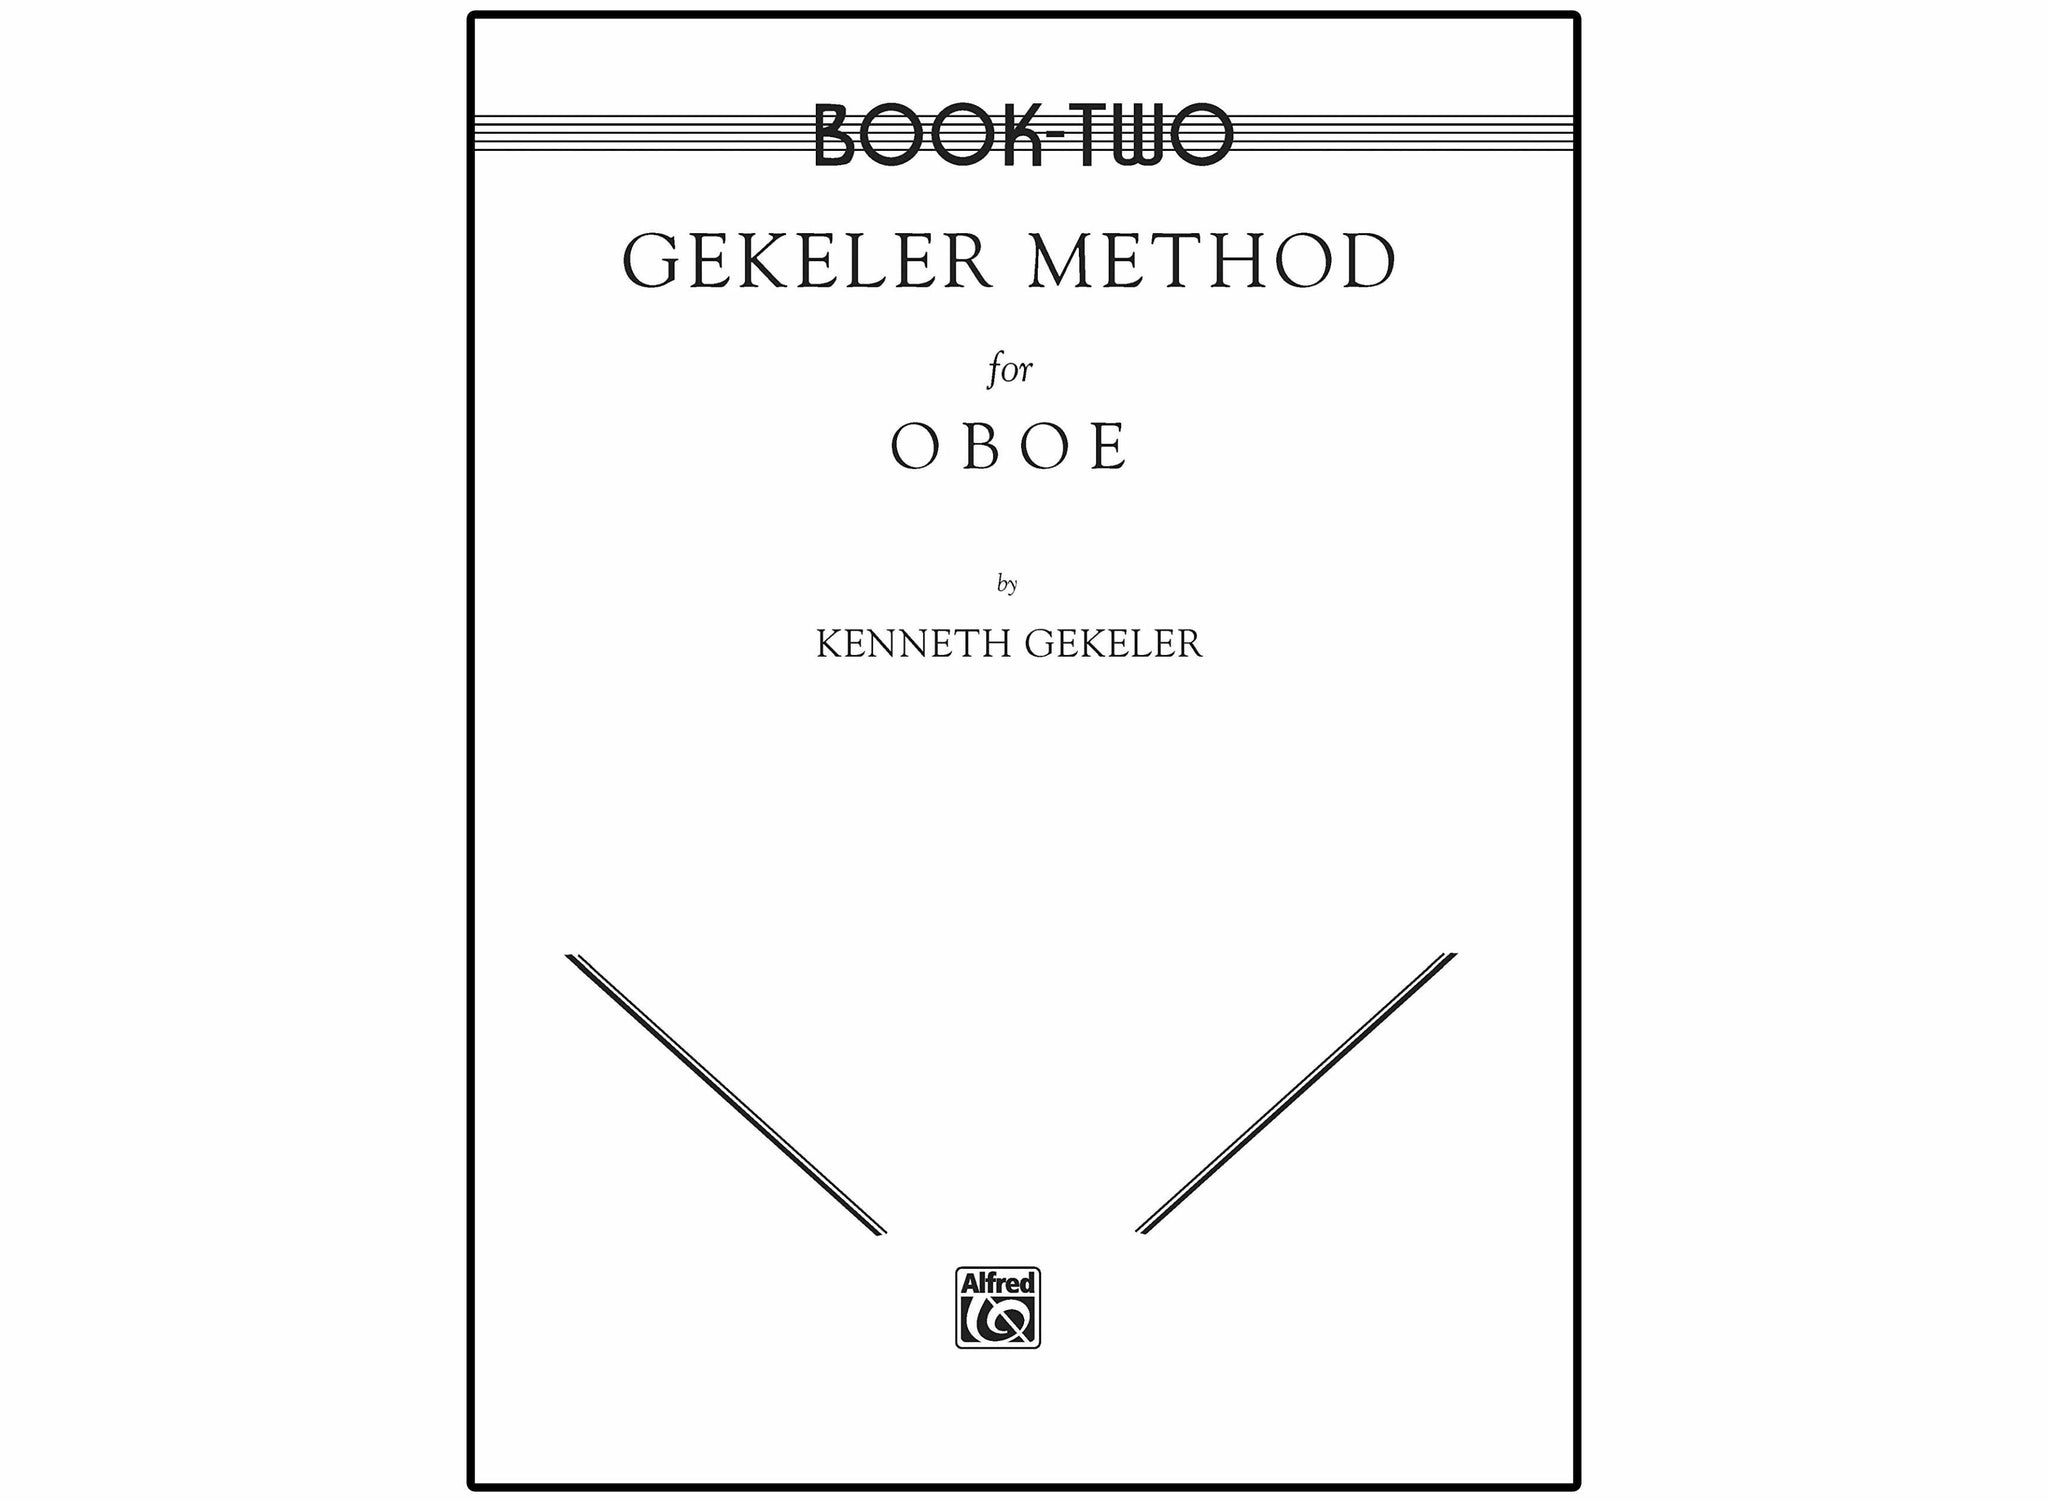 GEKELER METHOD FOR OBOE (BOOKS No. 1 & 2)